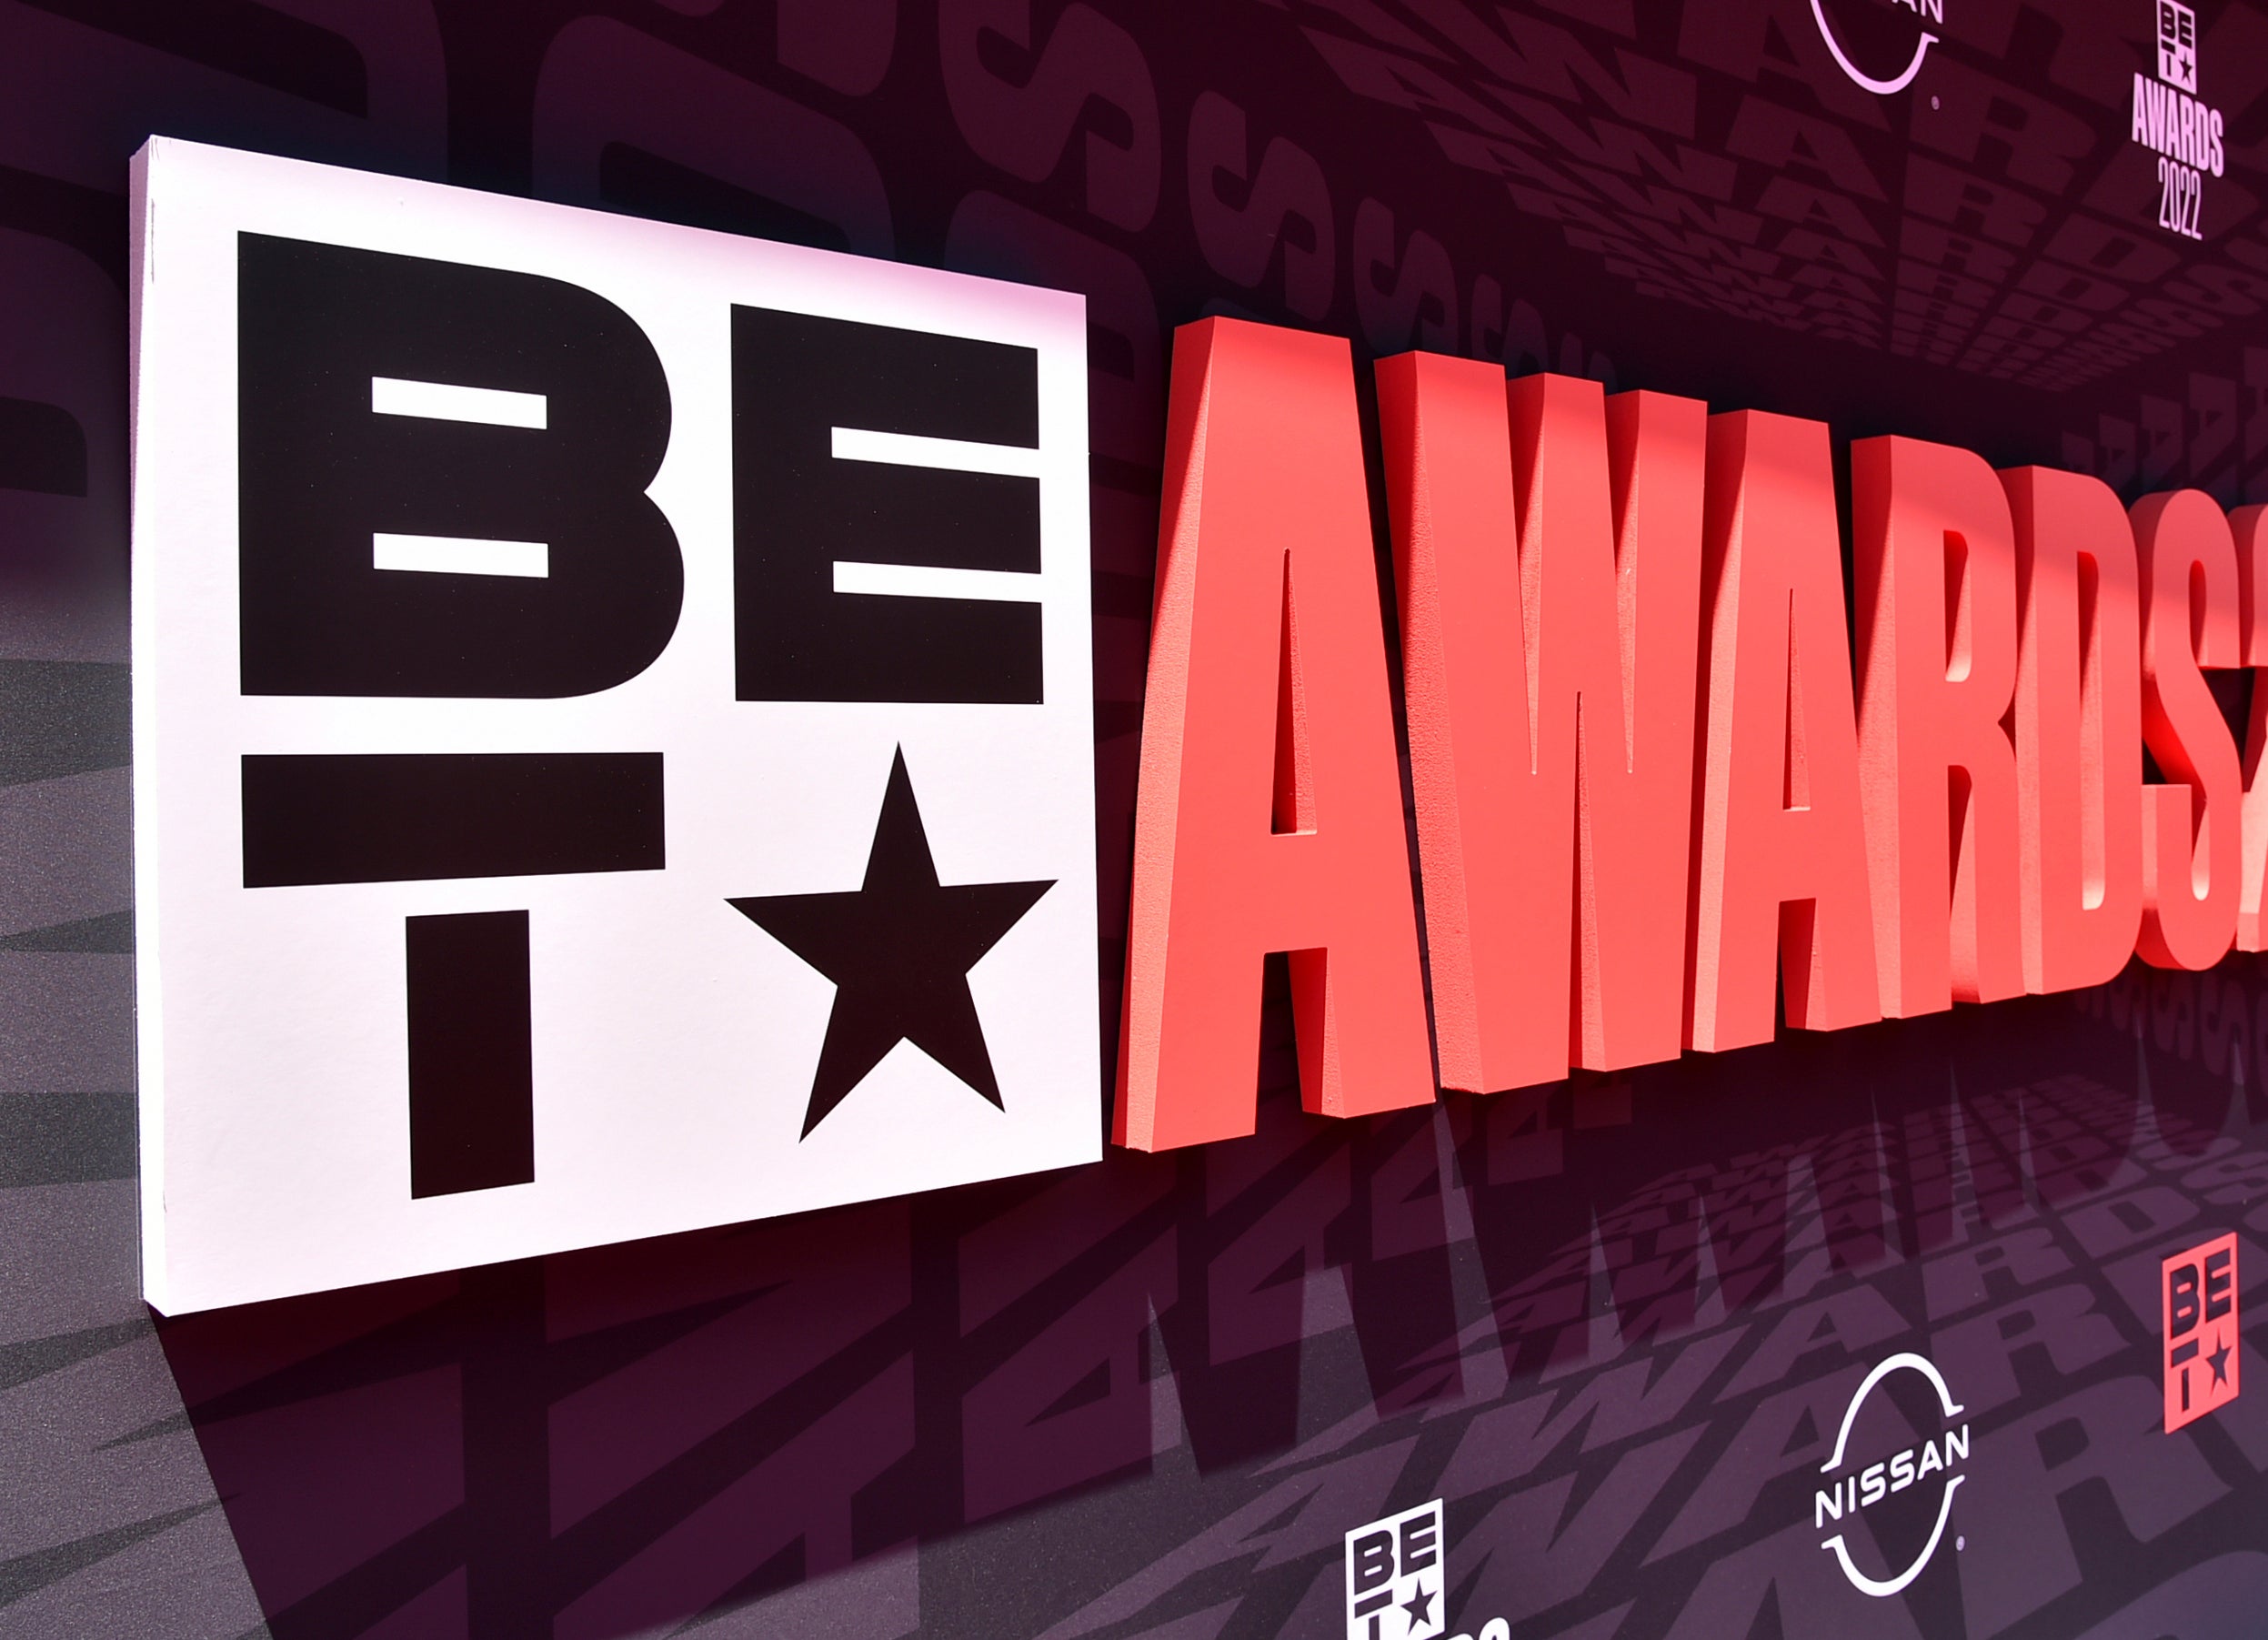 BET Awards return Sunday night, celebrating 50 years of hiphop The